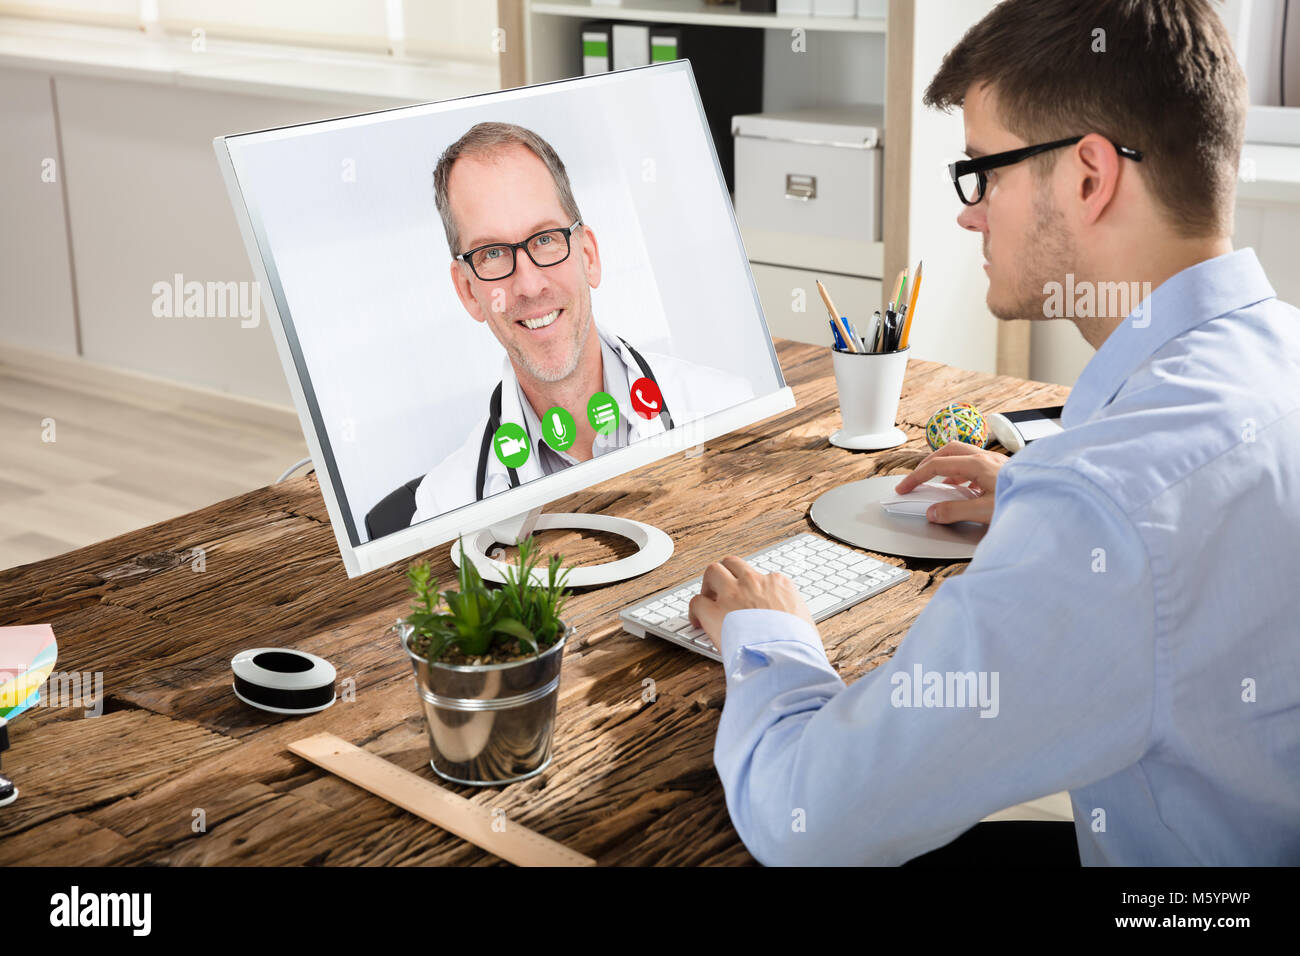 Jeune homme d'affaires la visioconférence avec Smiling Doctor sur Computer in Office Banque D'Images